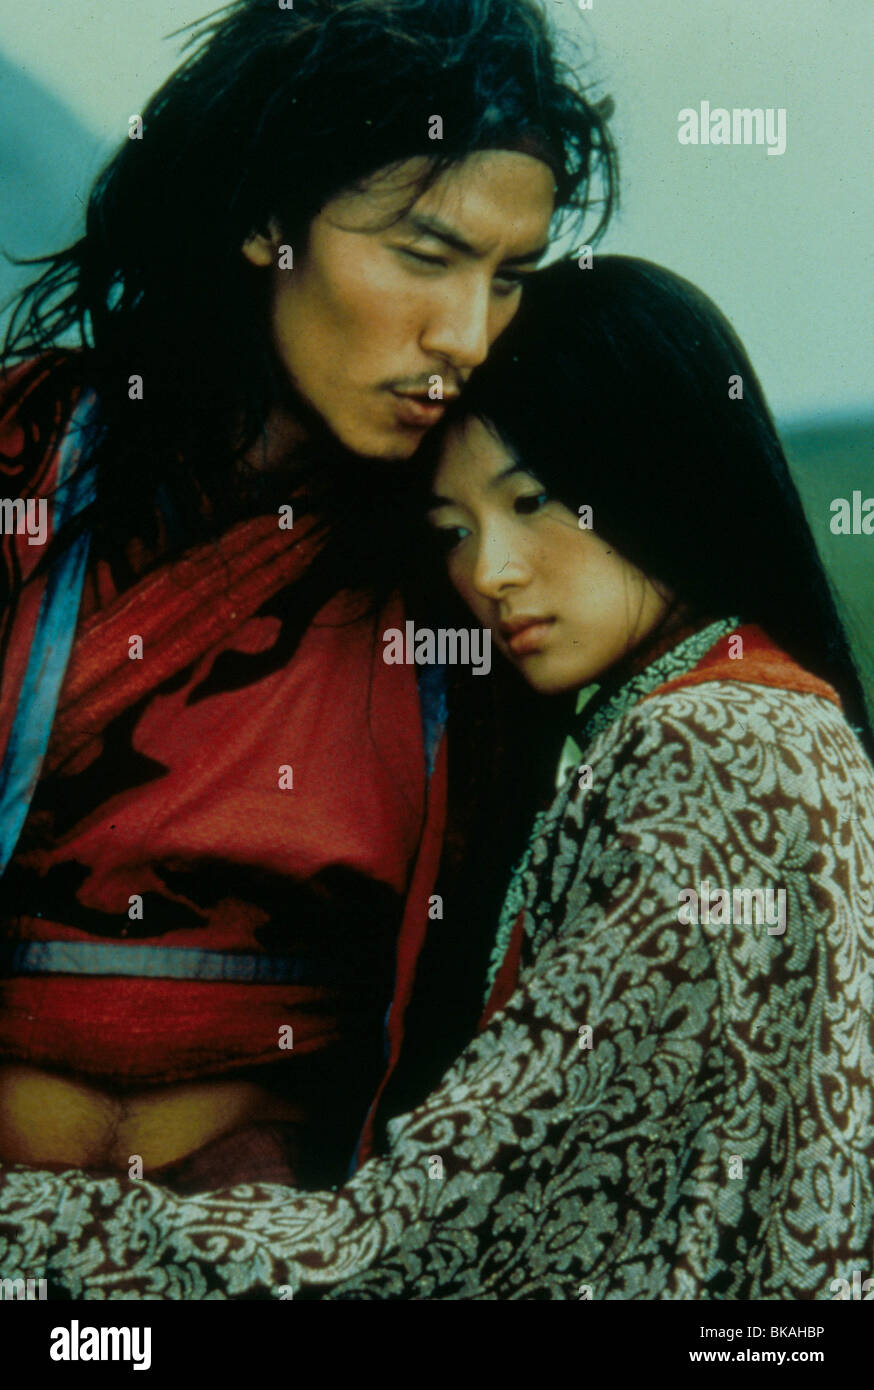 CROUCHING TIGER, HIDDEN DRAGON (2000) CHANG CHEN, ZHANG ZIYI TIGE 026 Stock Photo